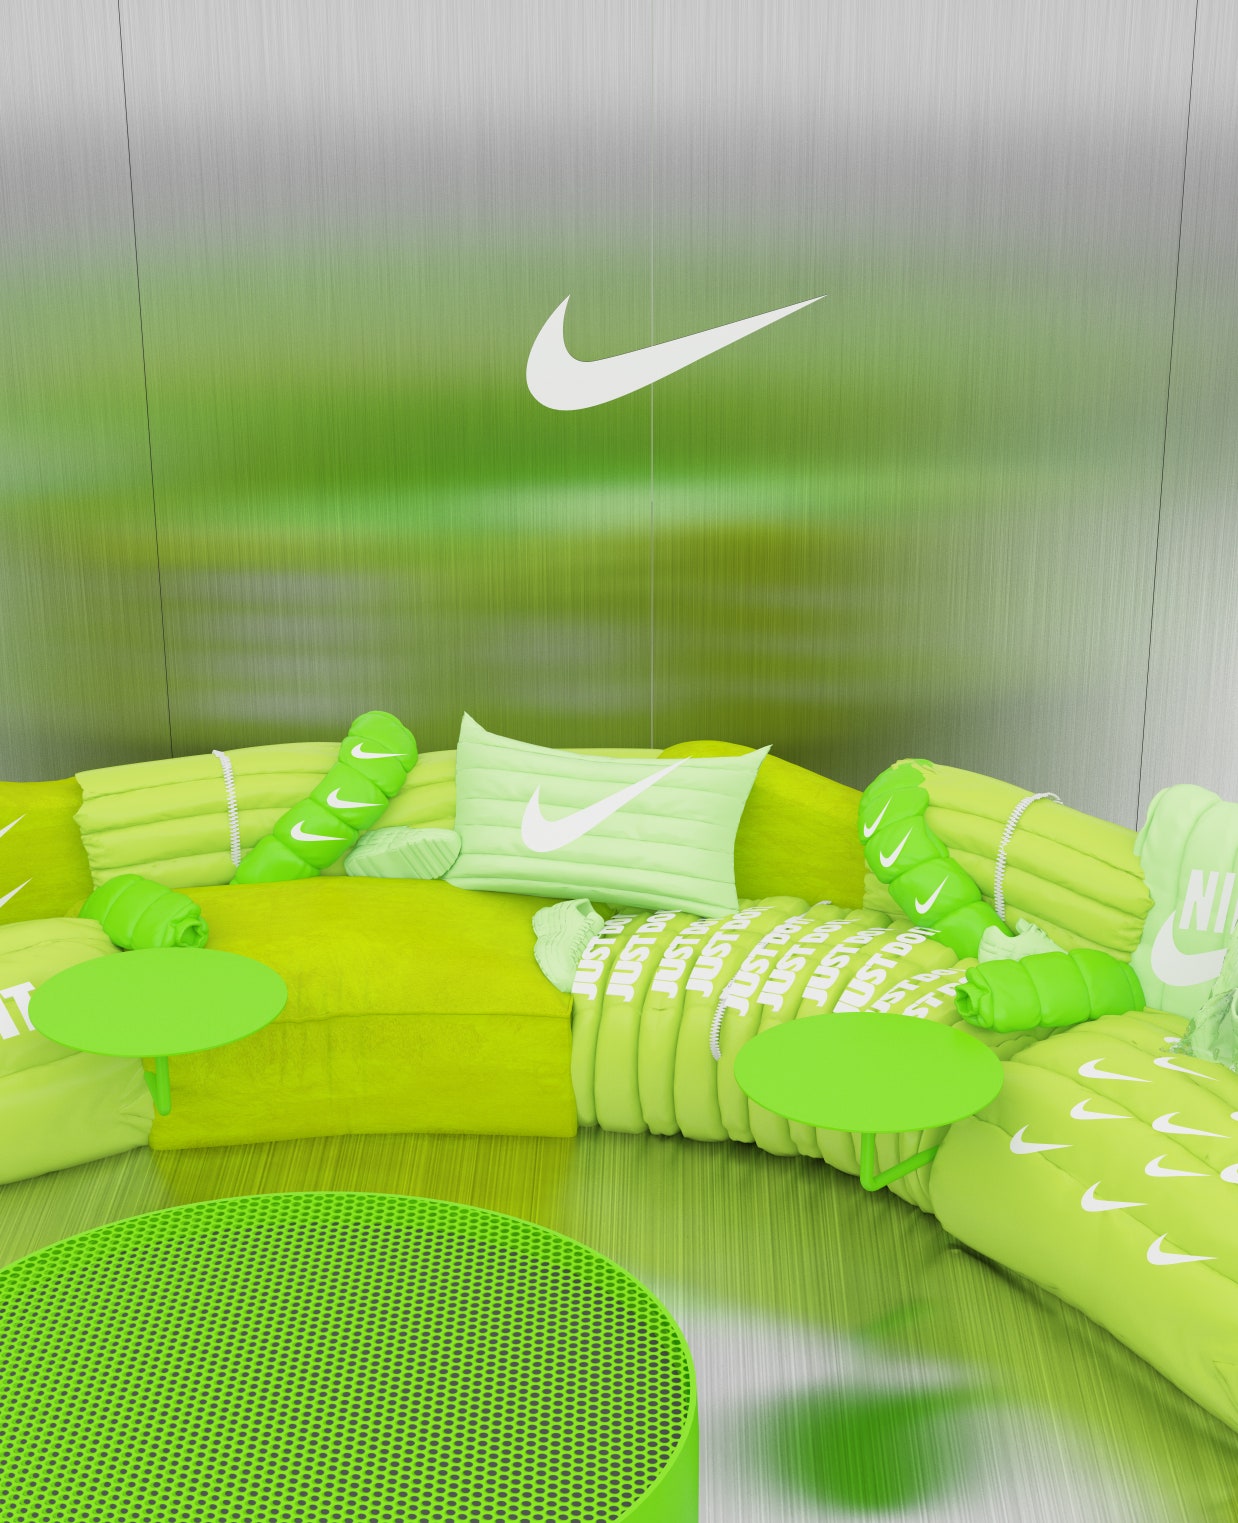 Гарри Нуриев представил виртуальный диван который можно опробовать в инстаграме